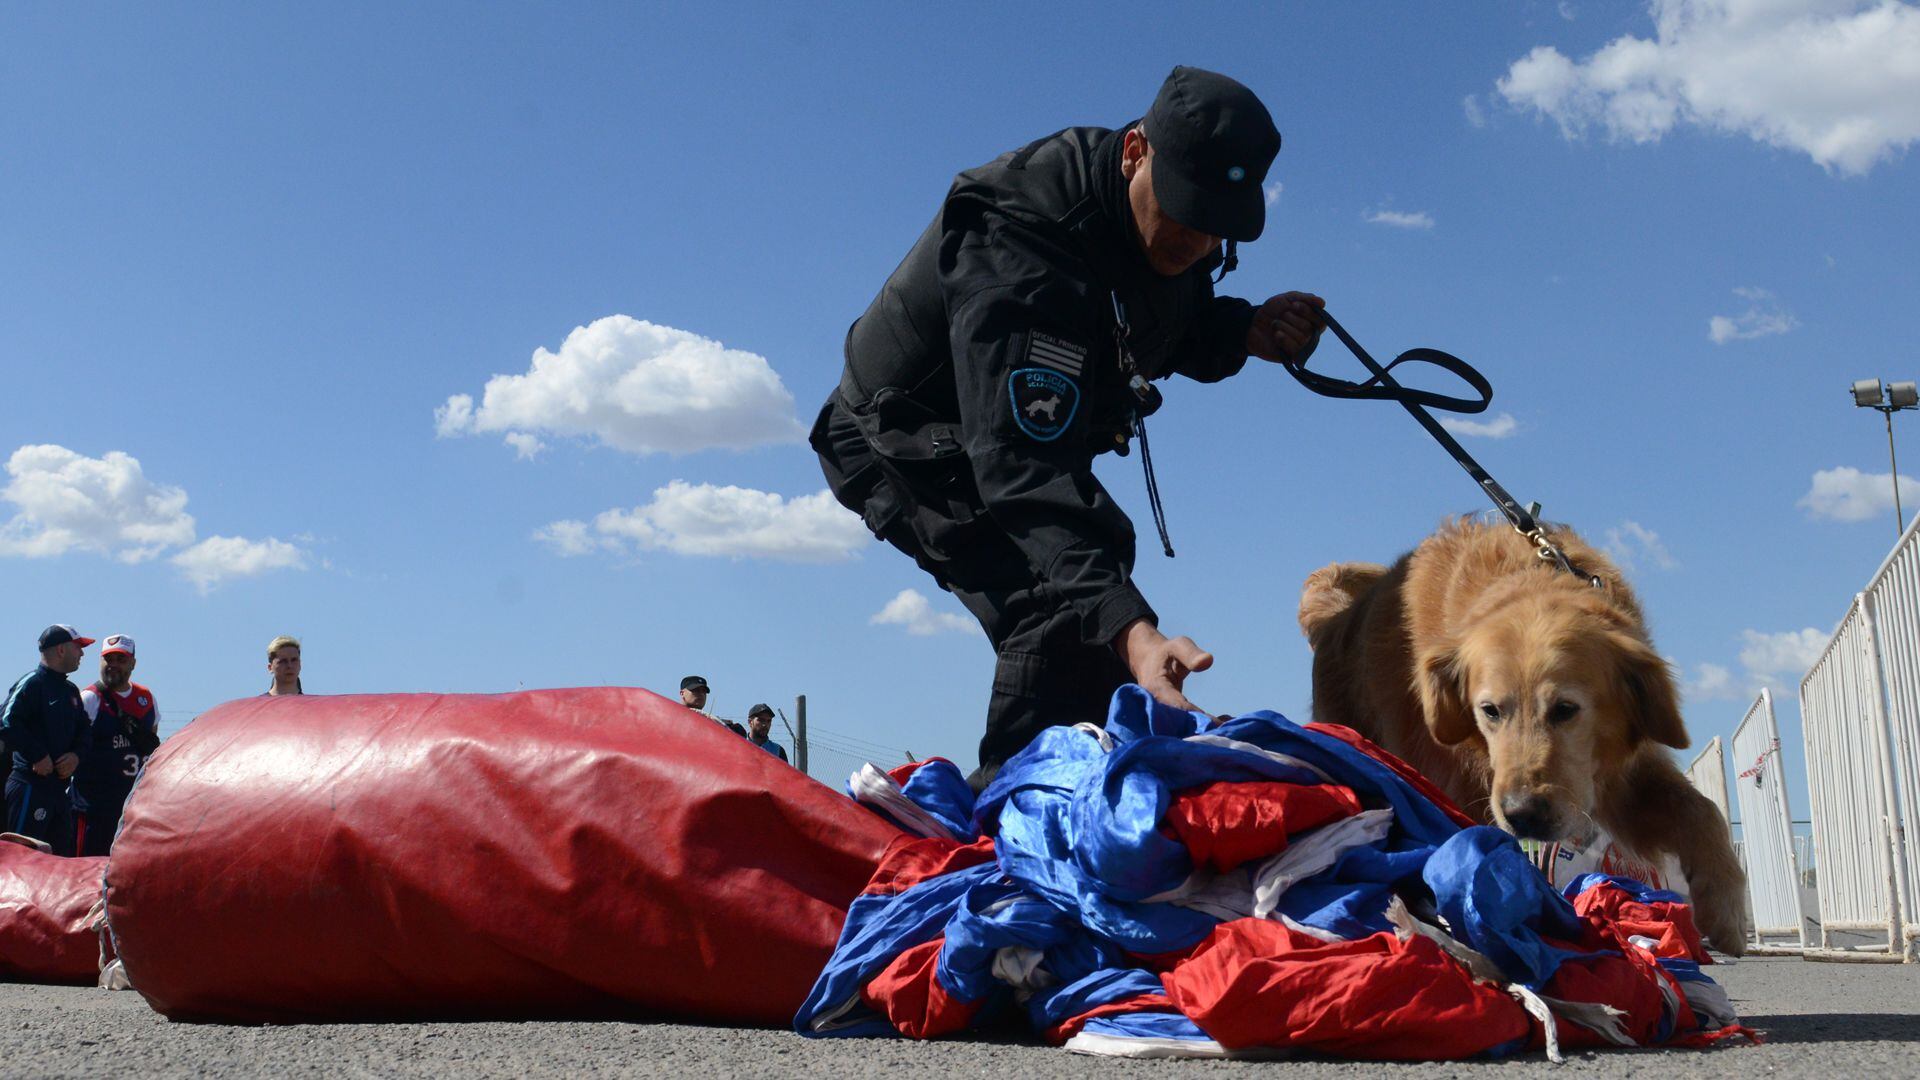 La misión de los perros en las canchas es olfatear los bombos y banderas de la barra brava del club para descartar la presencia de estupefacientes. Foto: Fernando Calzada.